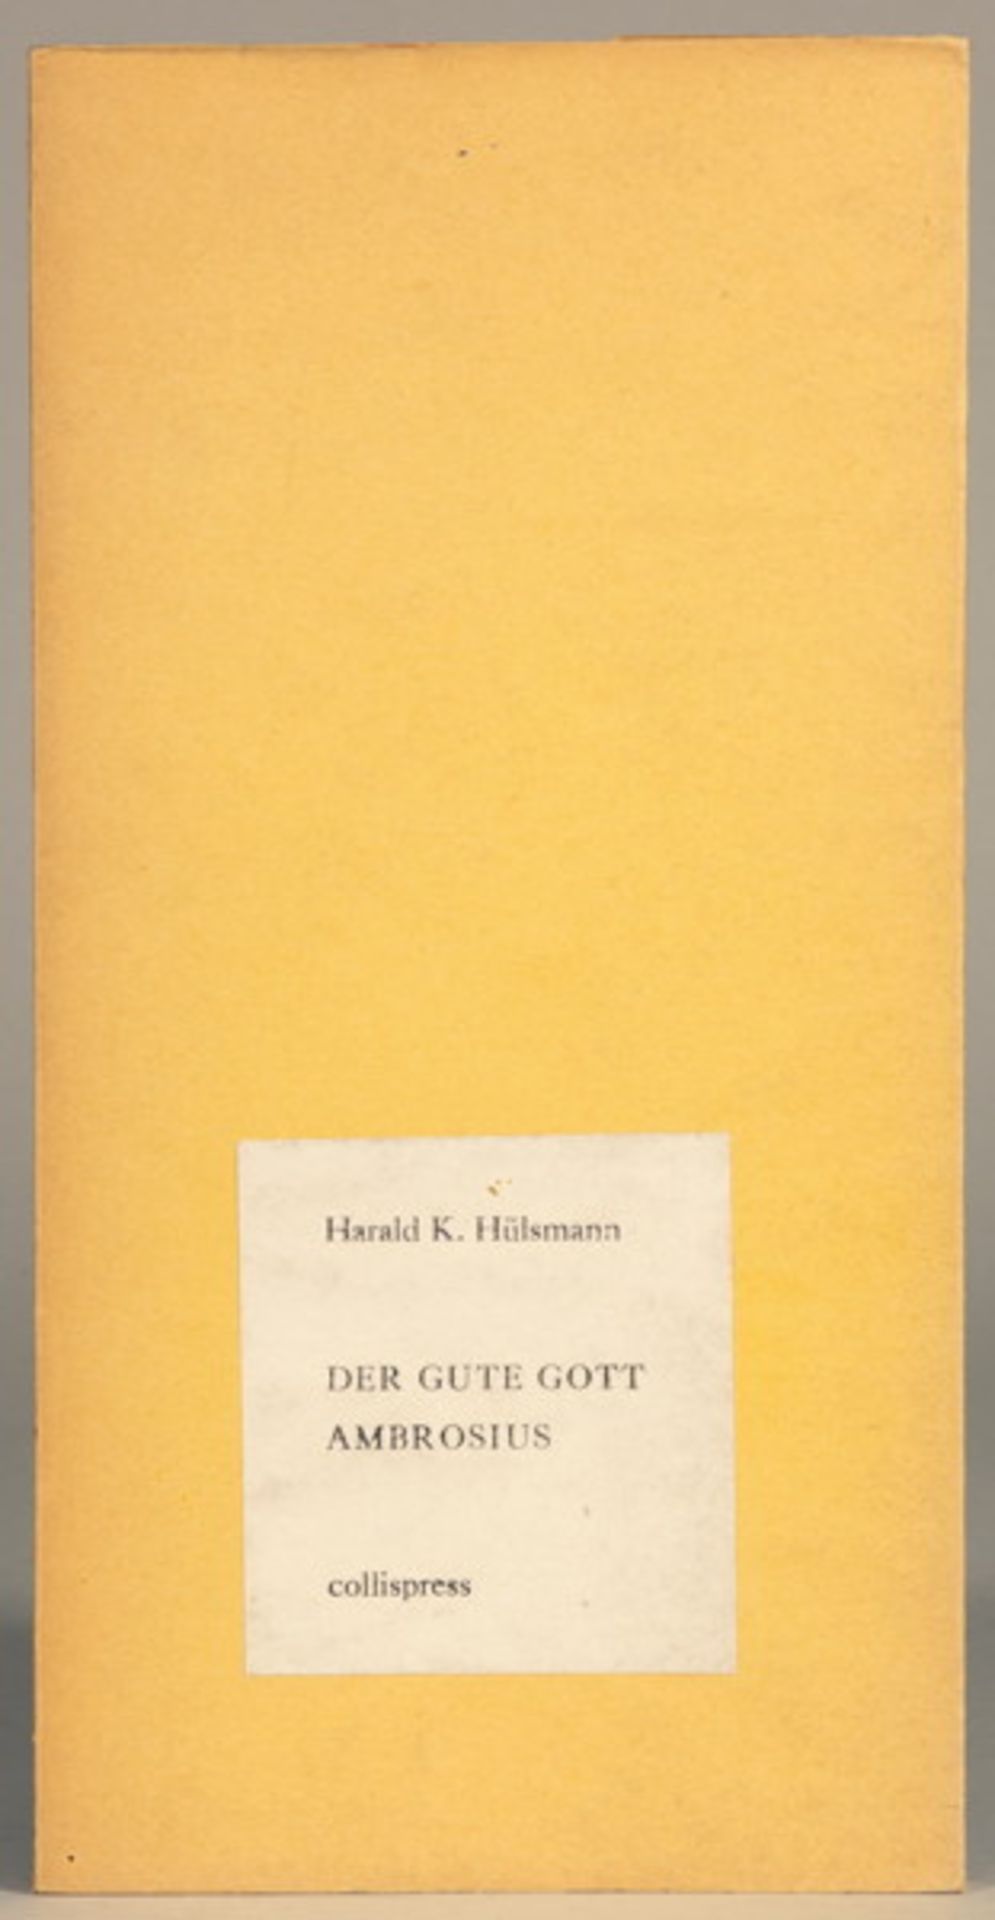 Collispress - Rolf Dieter Brinkmann. Ohne Neger. Gedichte 1965. Hommerich, Paul Eckhardt 1966. - Image 4 of 5